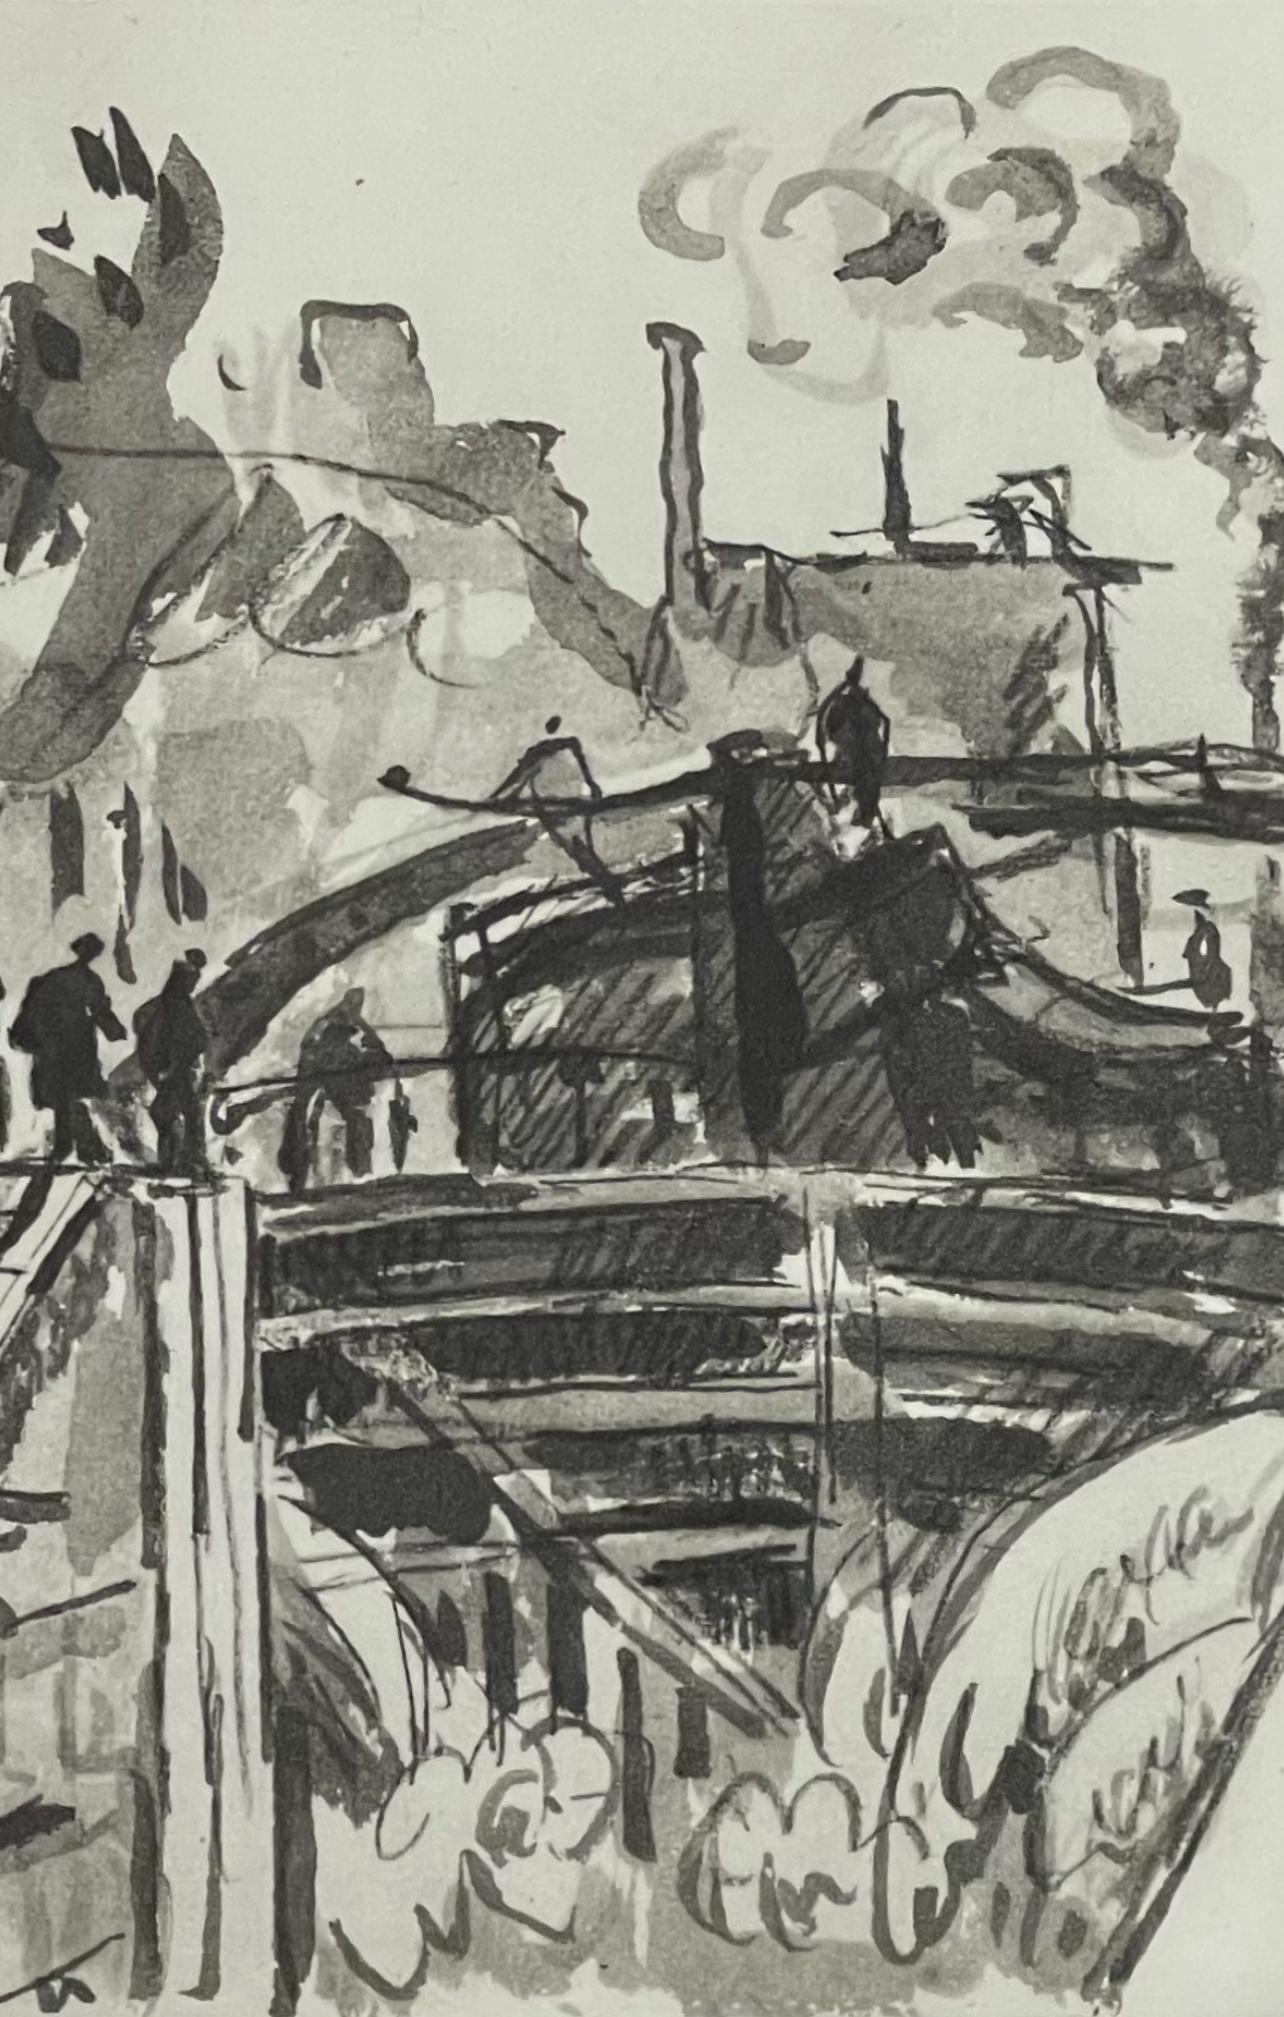 Signac, Canal St-Martin, Signac Dessins (after) - Impressionist Print by Paul Signac